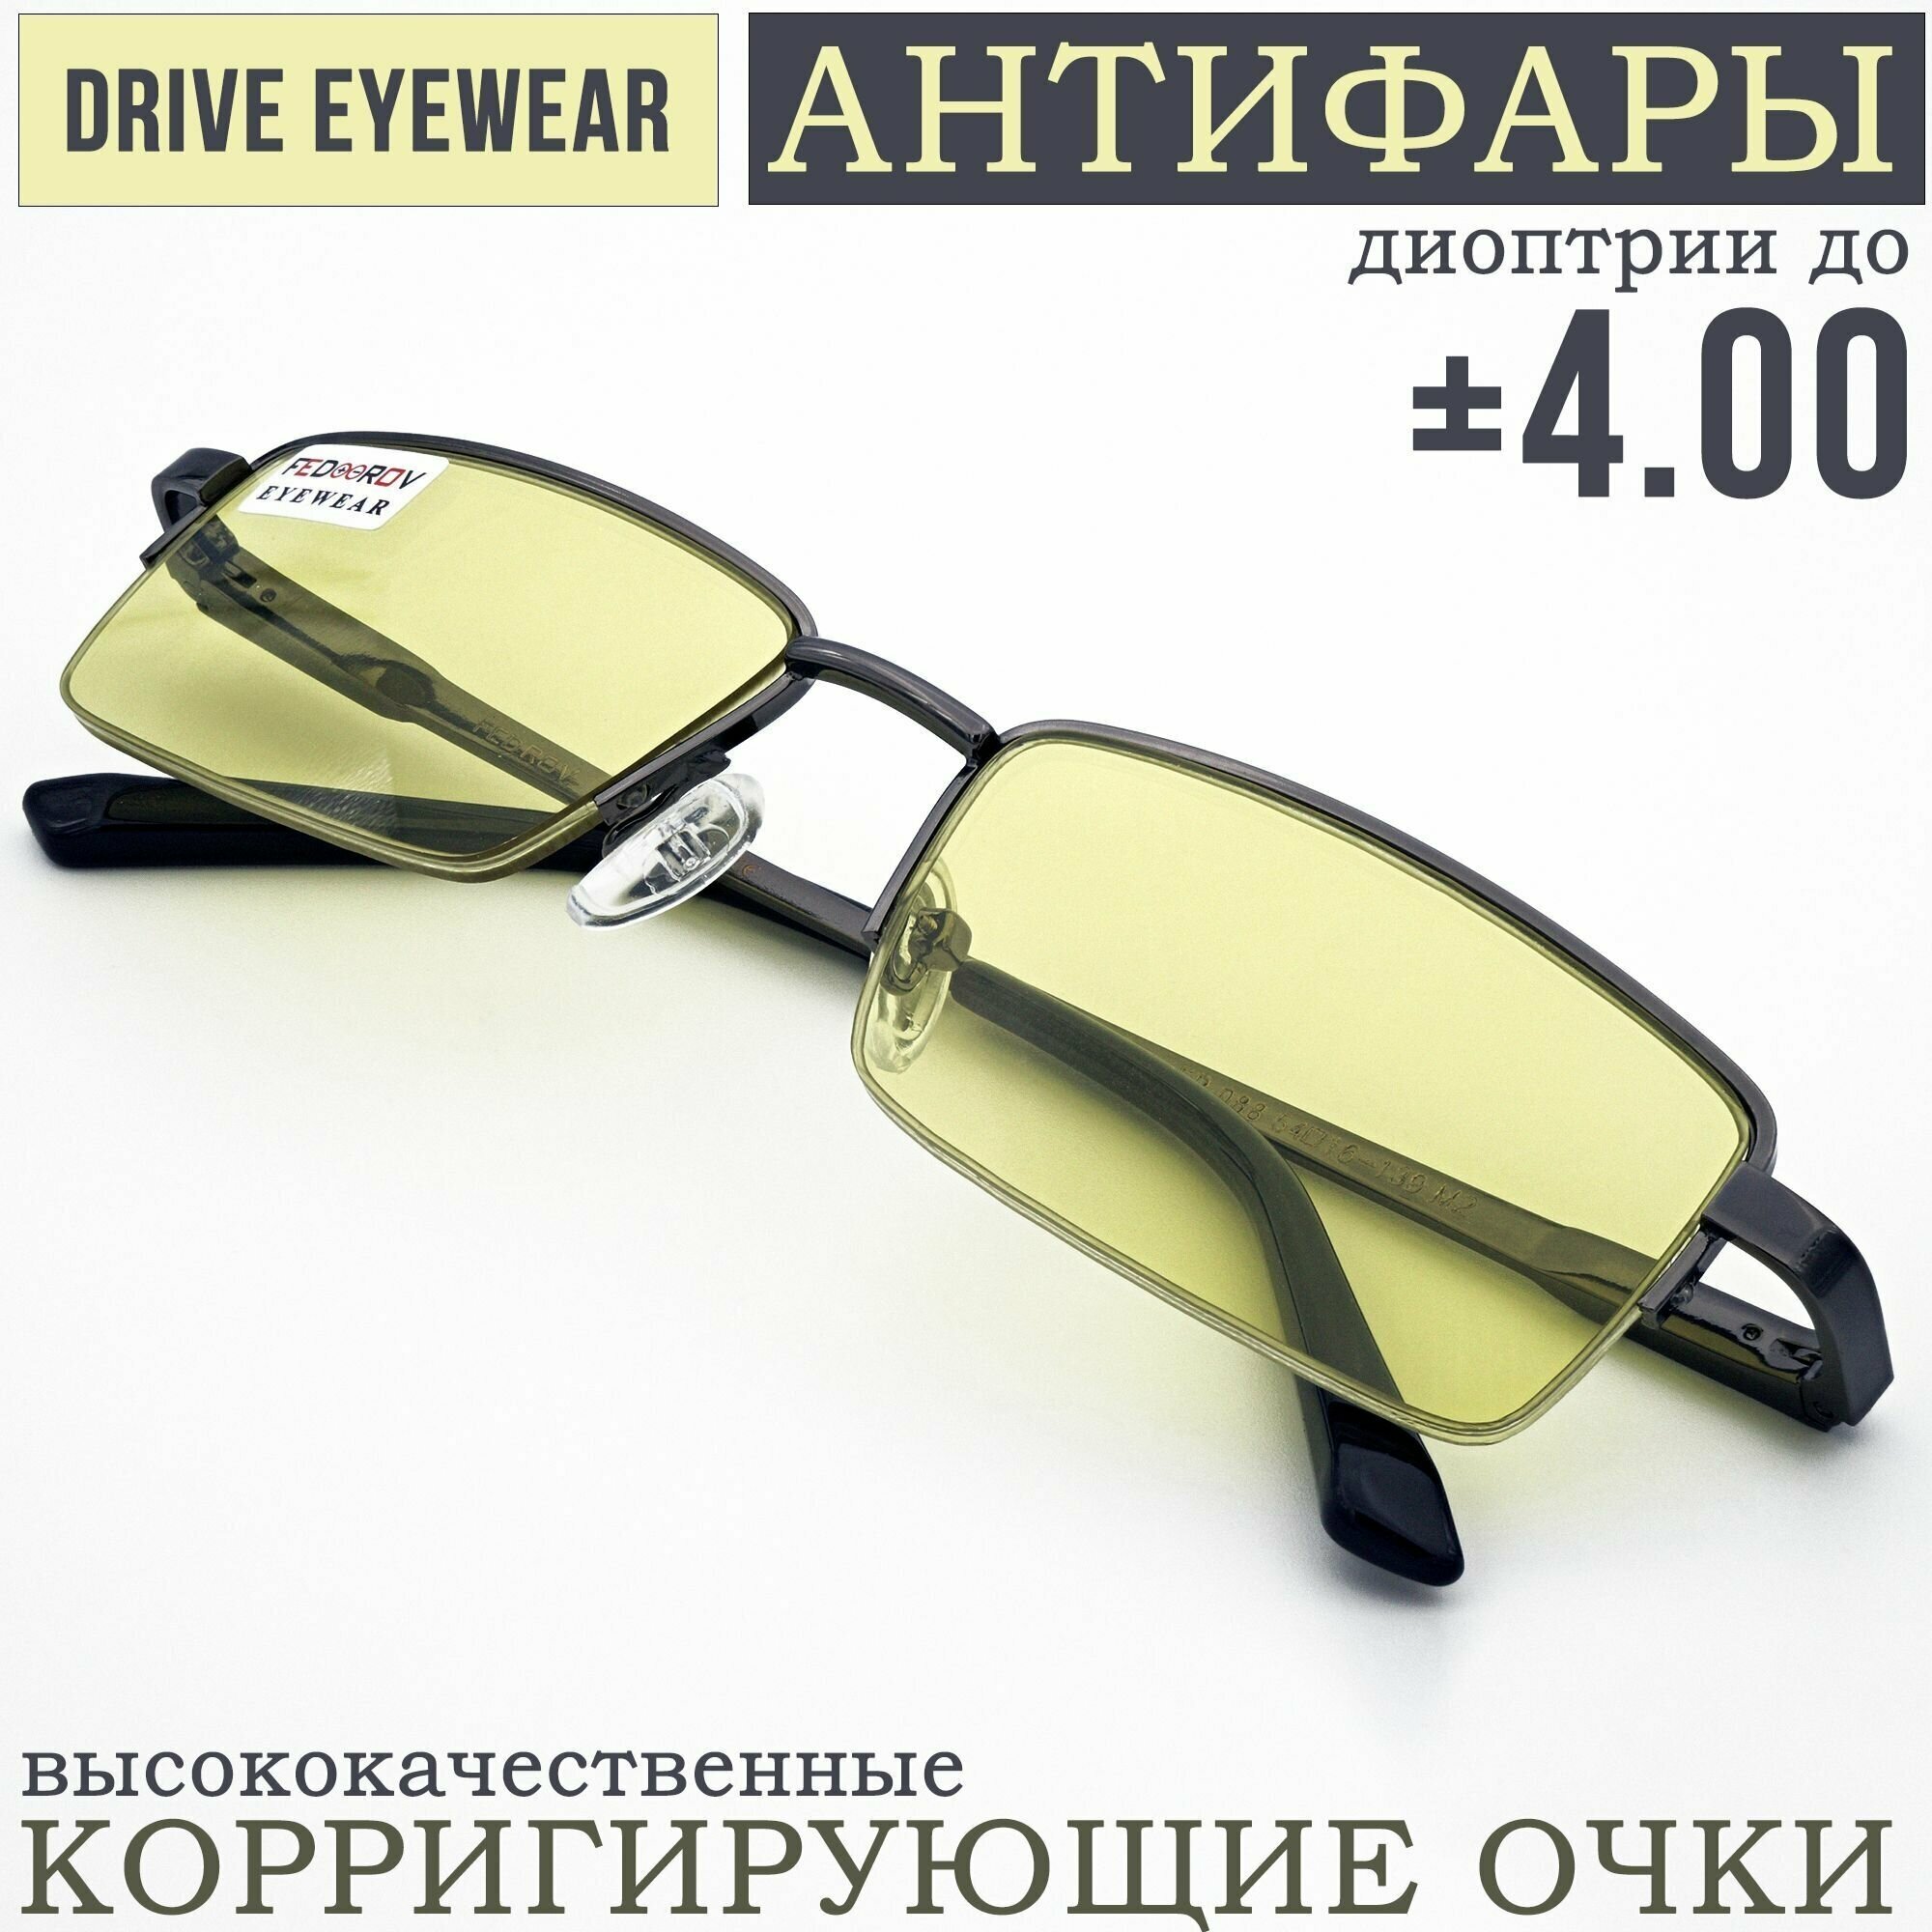 Готовые очки водительские Антифары с диоптриями -1,00